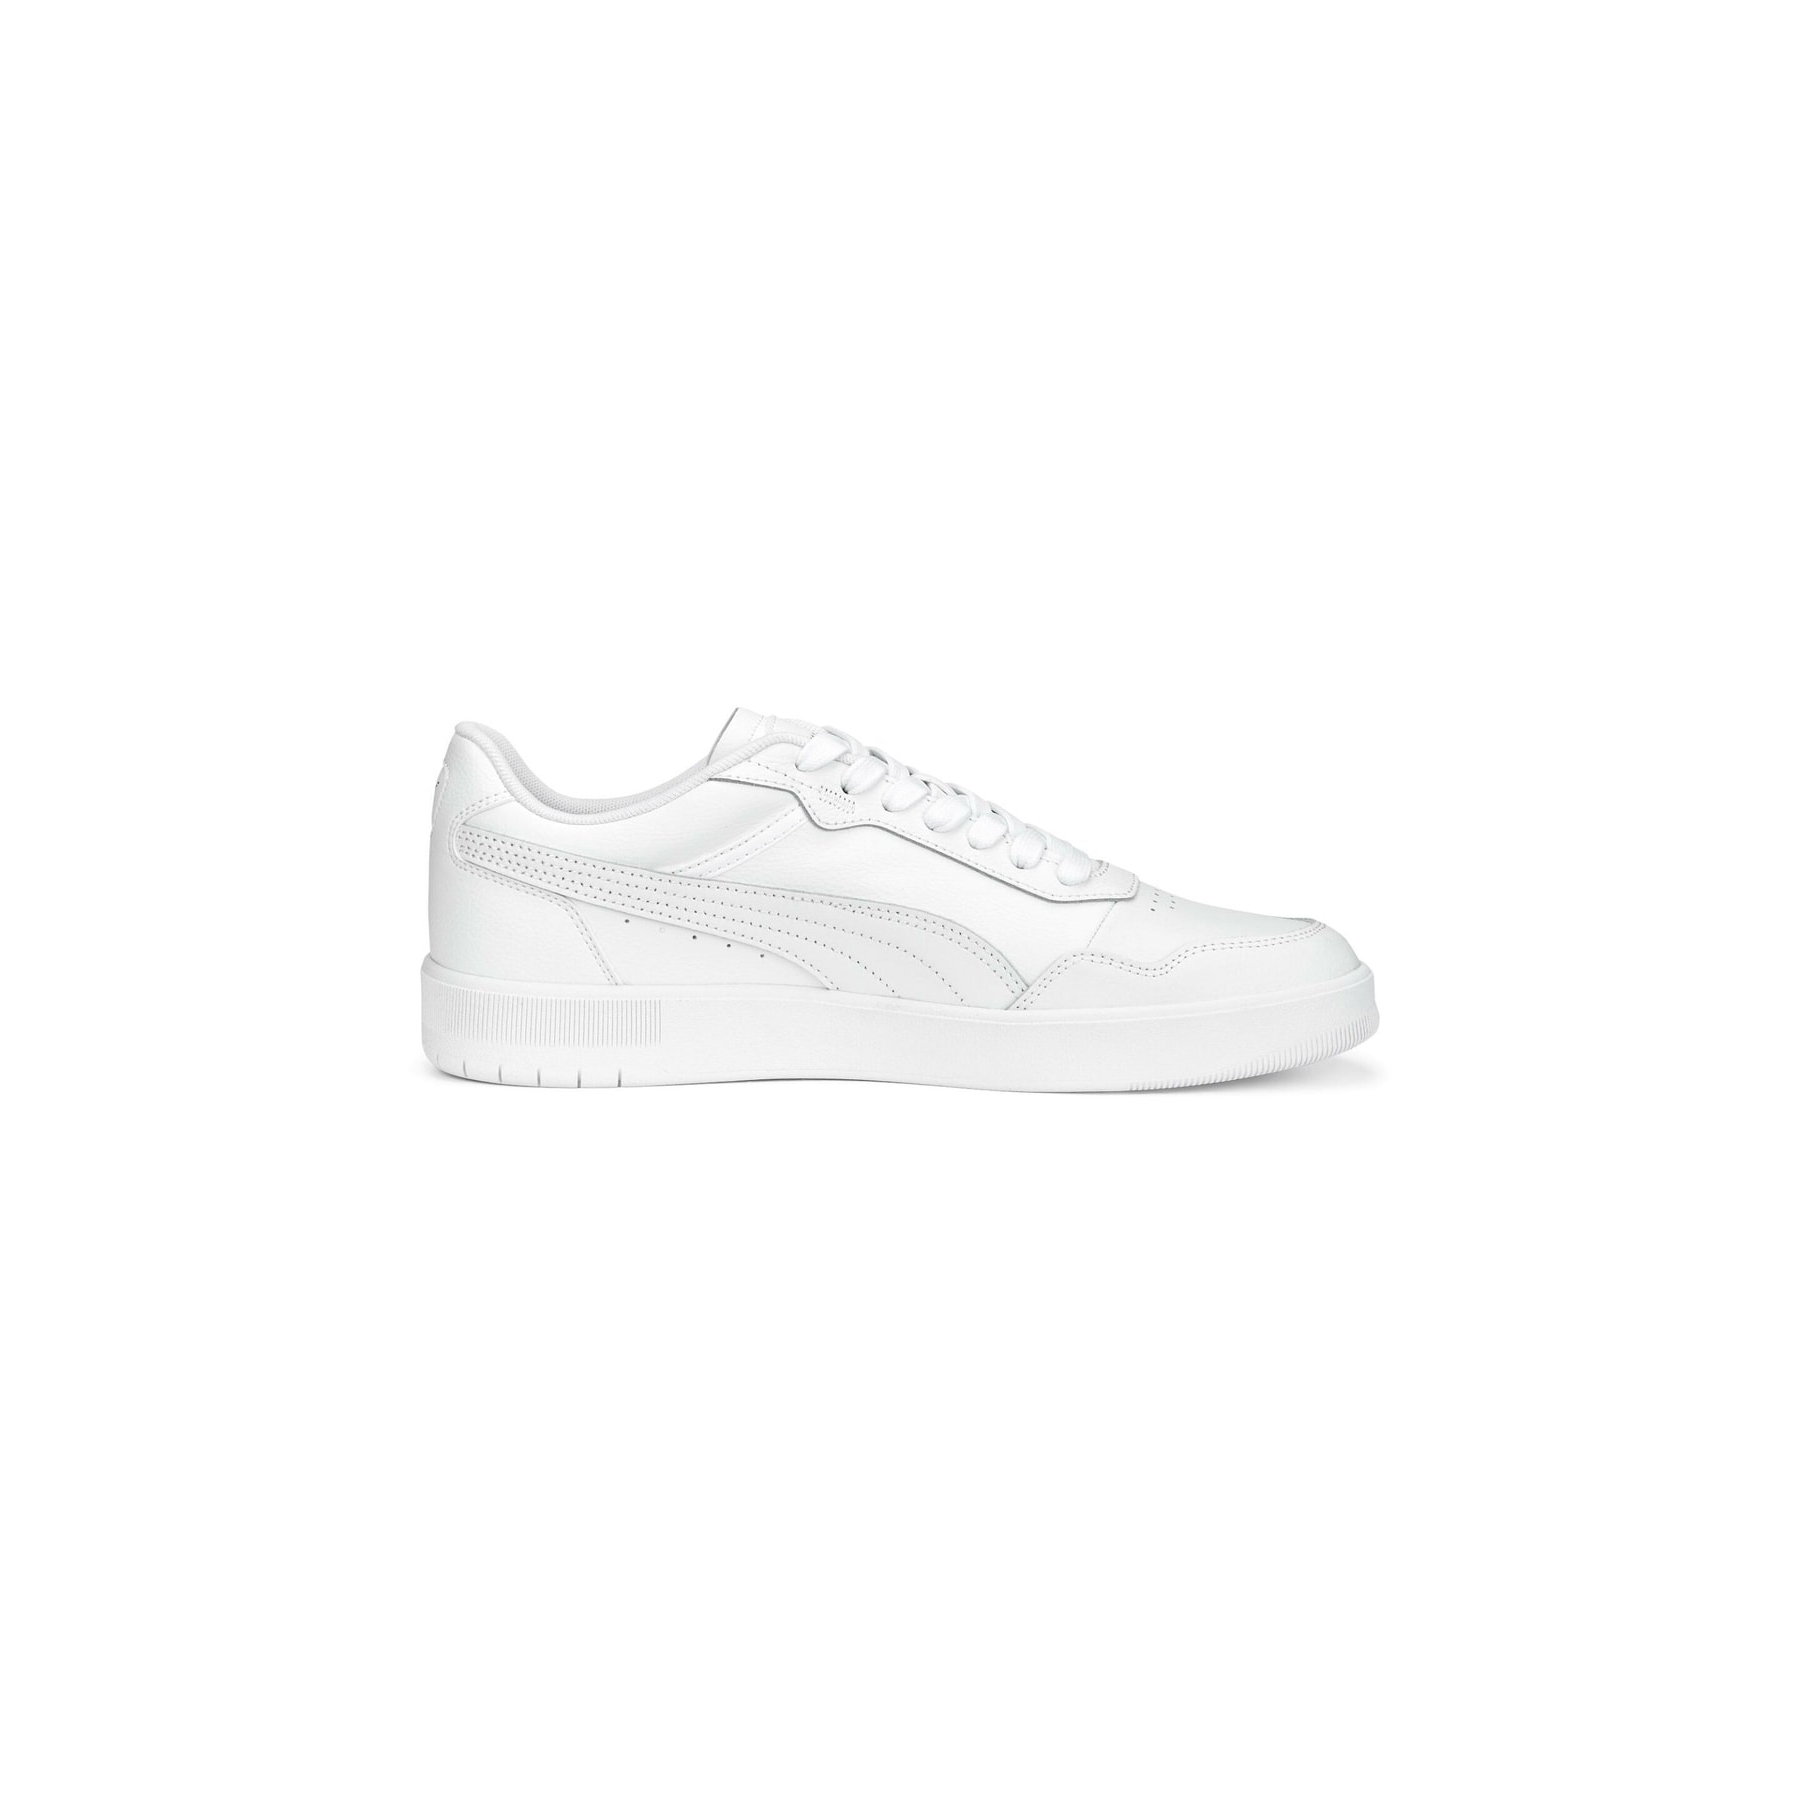 Puma Court Ultra Beyaz Spor Ayakkabı (389368-02)